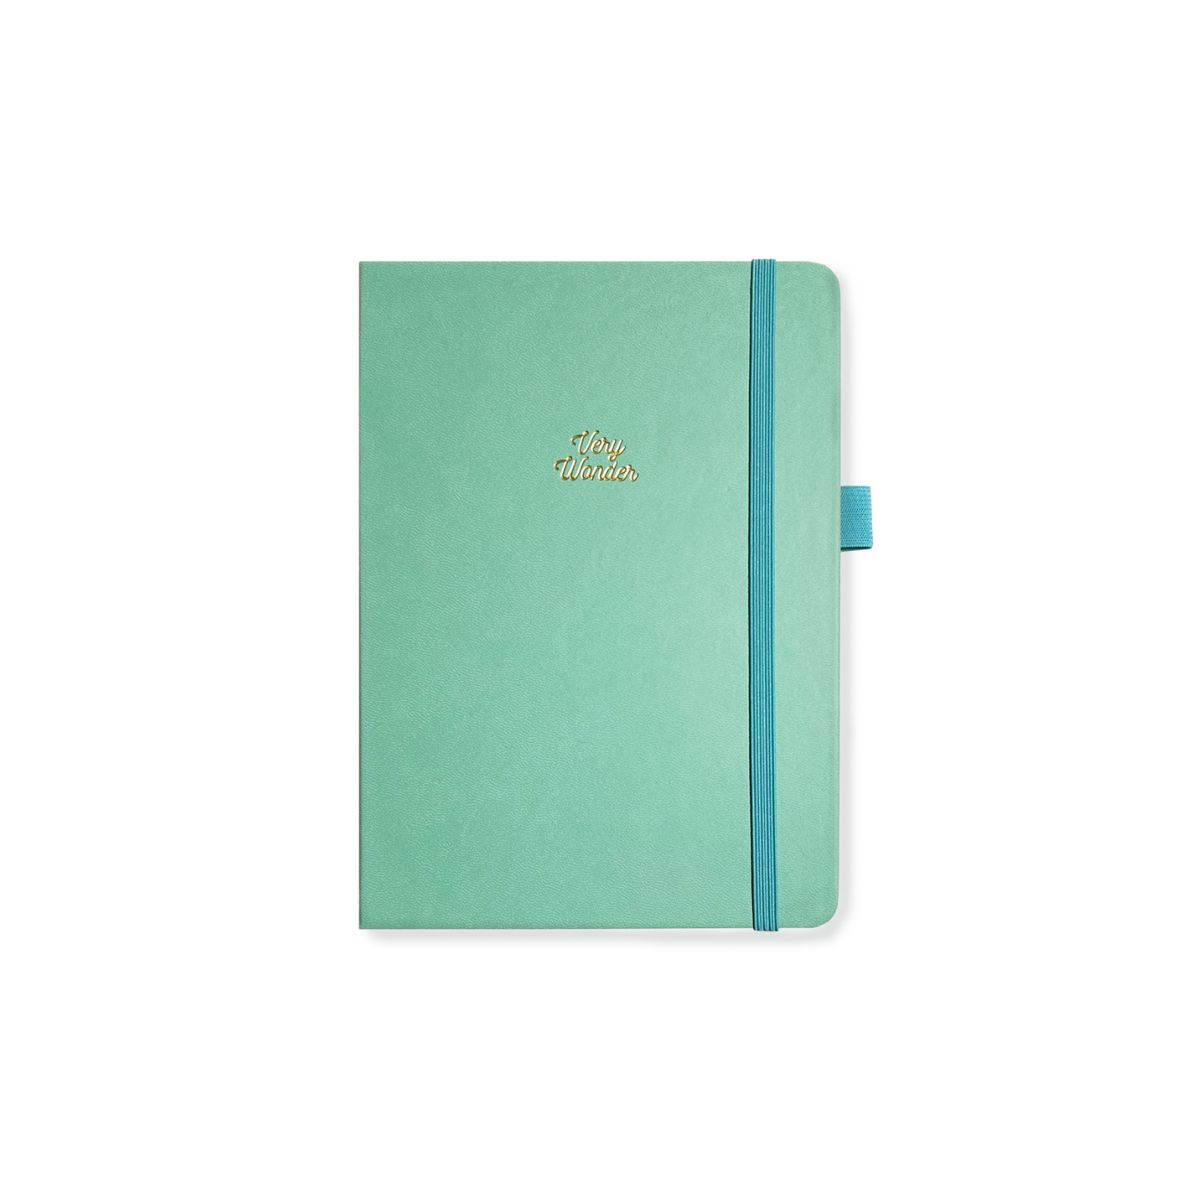 Bullet Journal Kit - Light Blue - Very Wonder